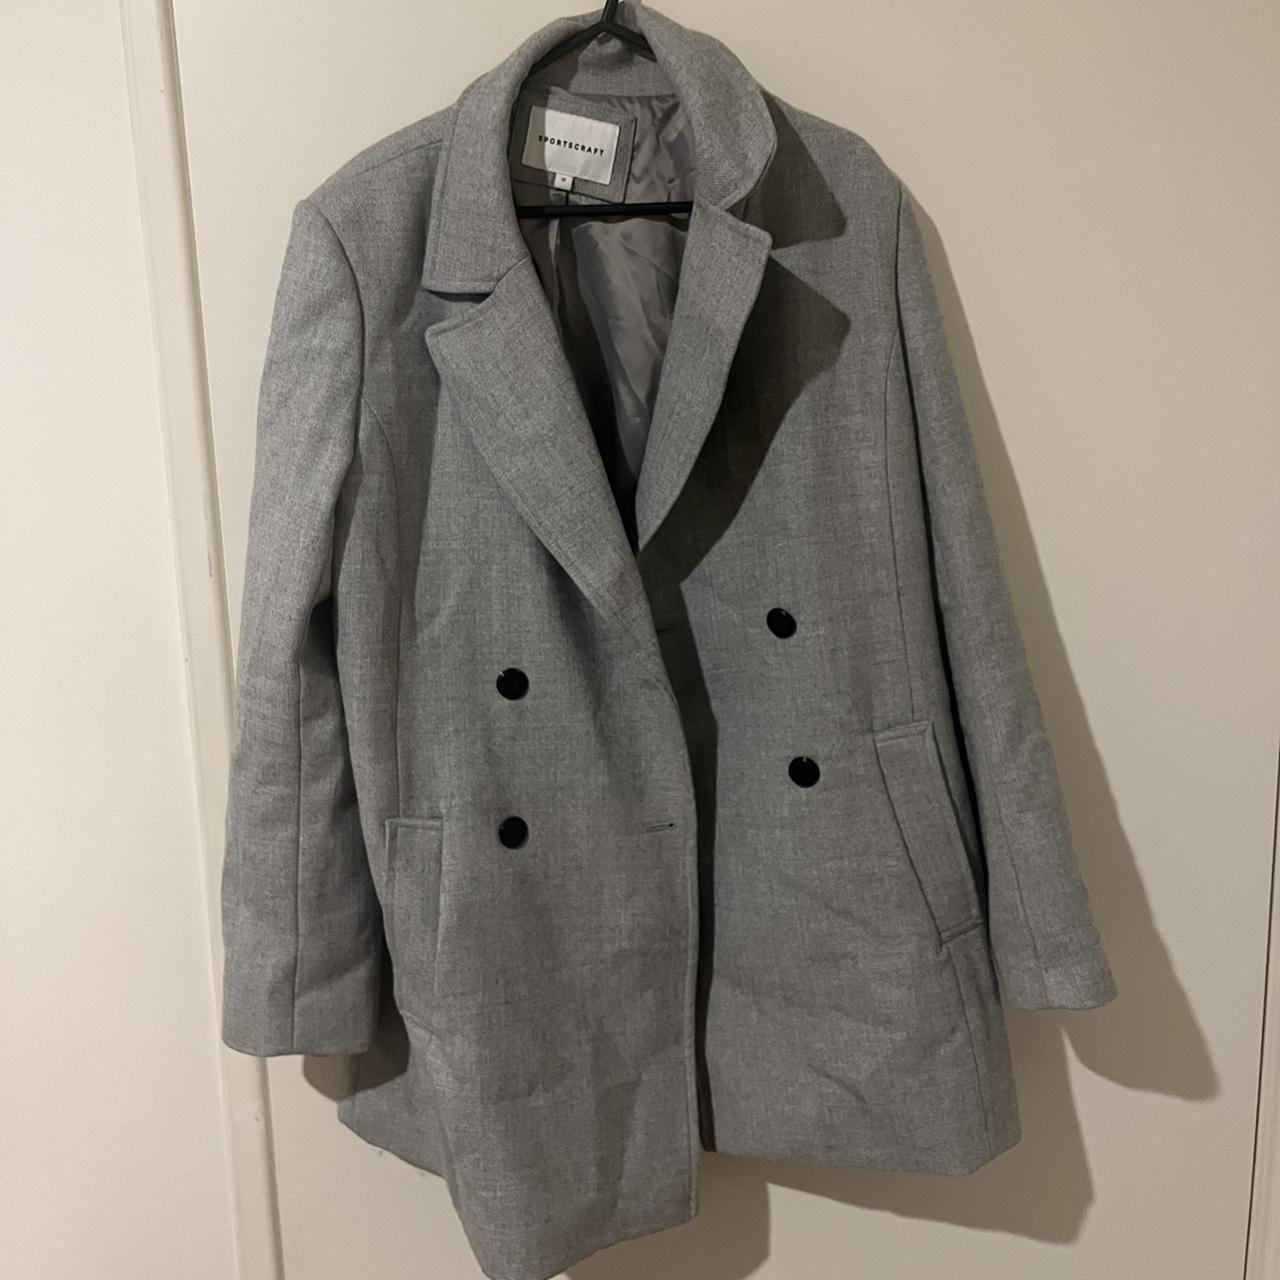 Sportscraft grey coat - size 12 Standard size 12... - Depop